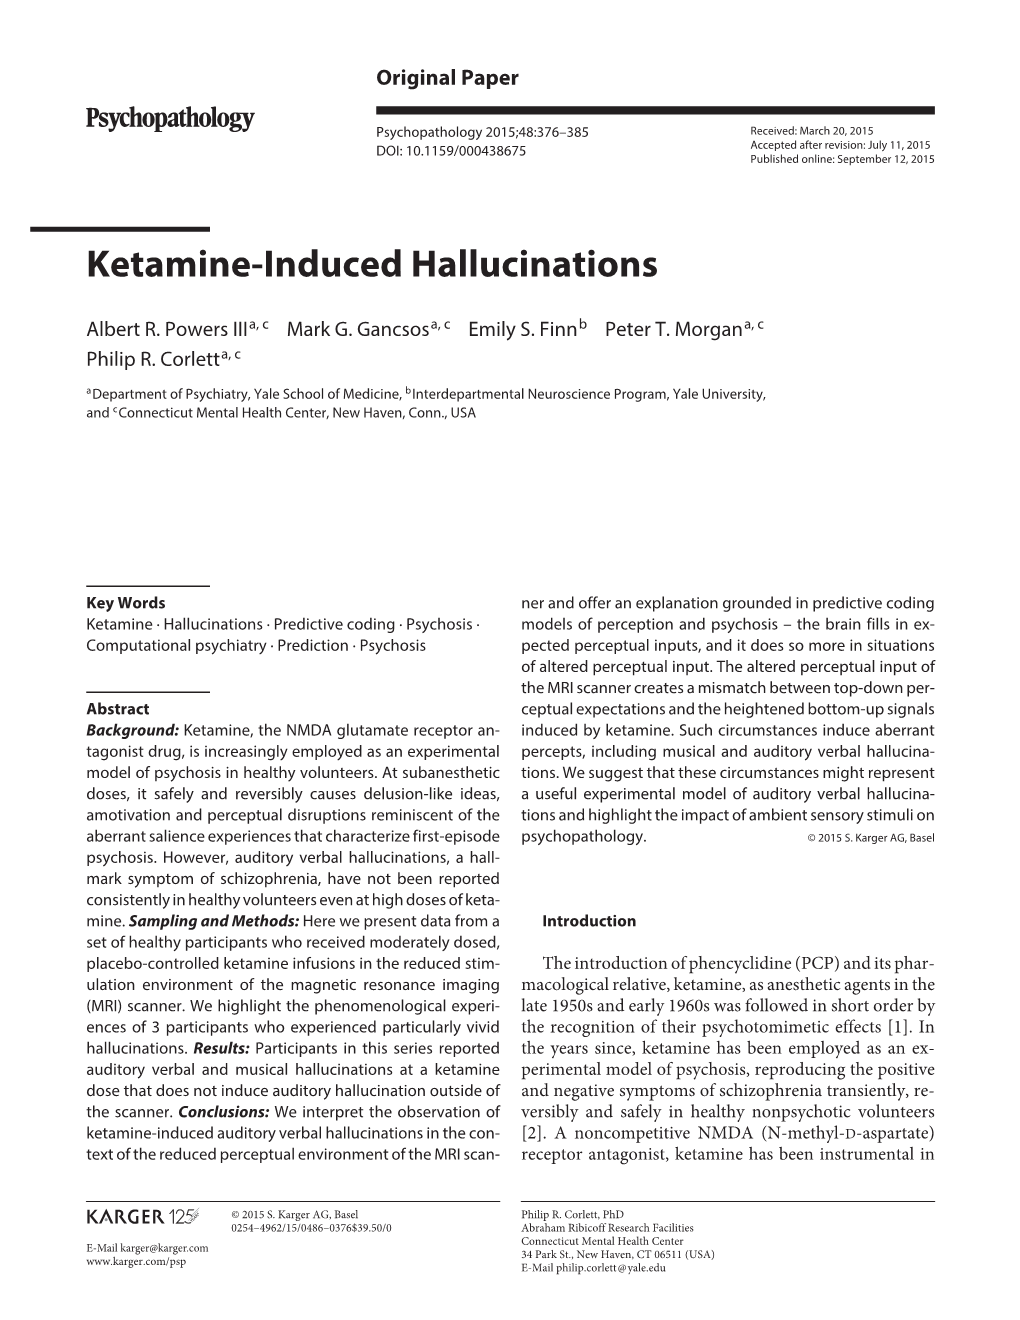 Ketamine-Induced Hallucinations